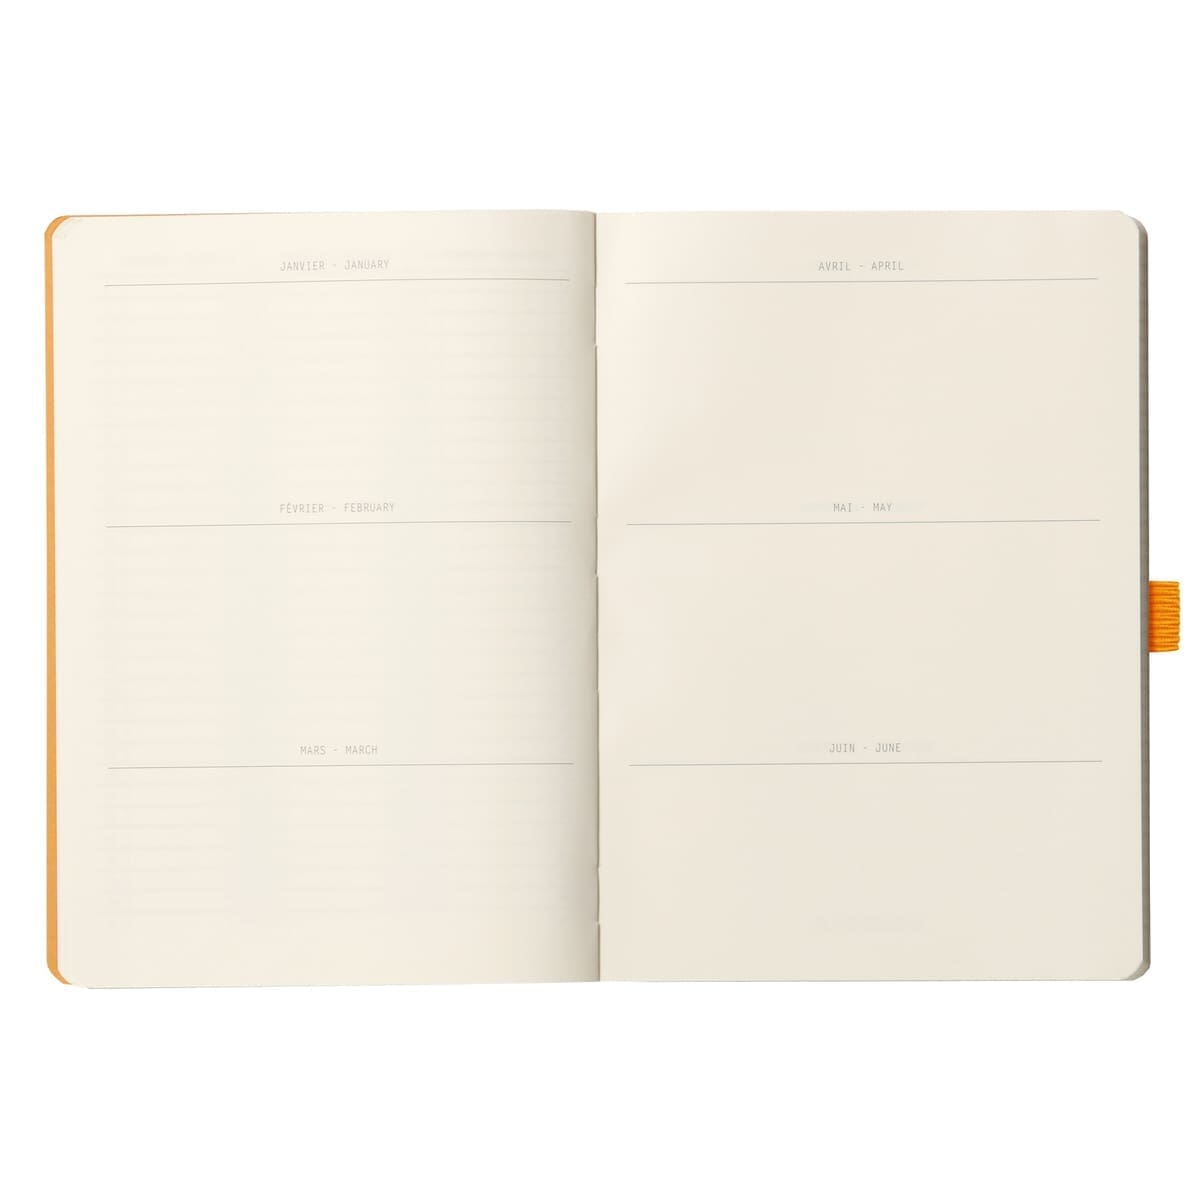 GoalBook Dotted notebook A5 - Tangerine - Rhodia - Tidformera